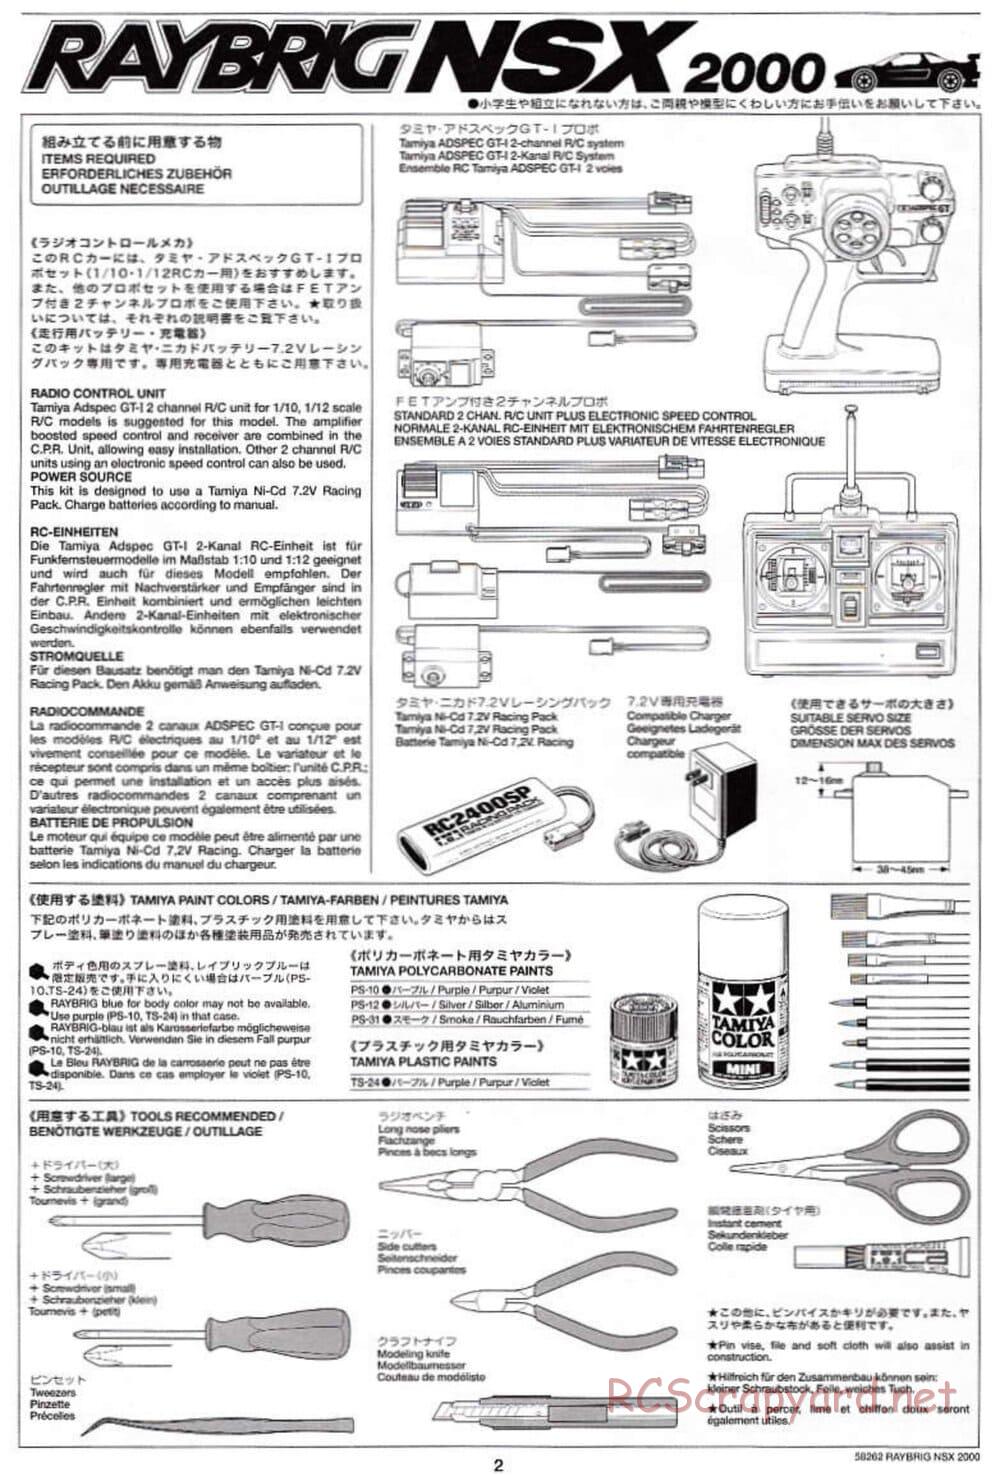 Tamiya - Raybrig NSX 2000 - TB-01 Chassis - Manual - Page 2